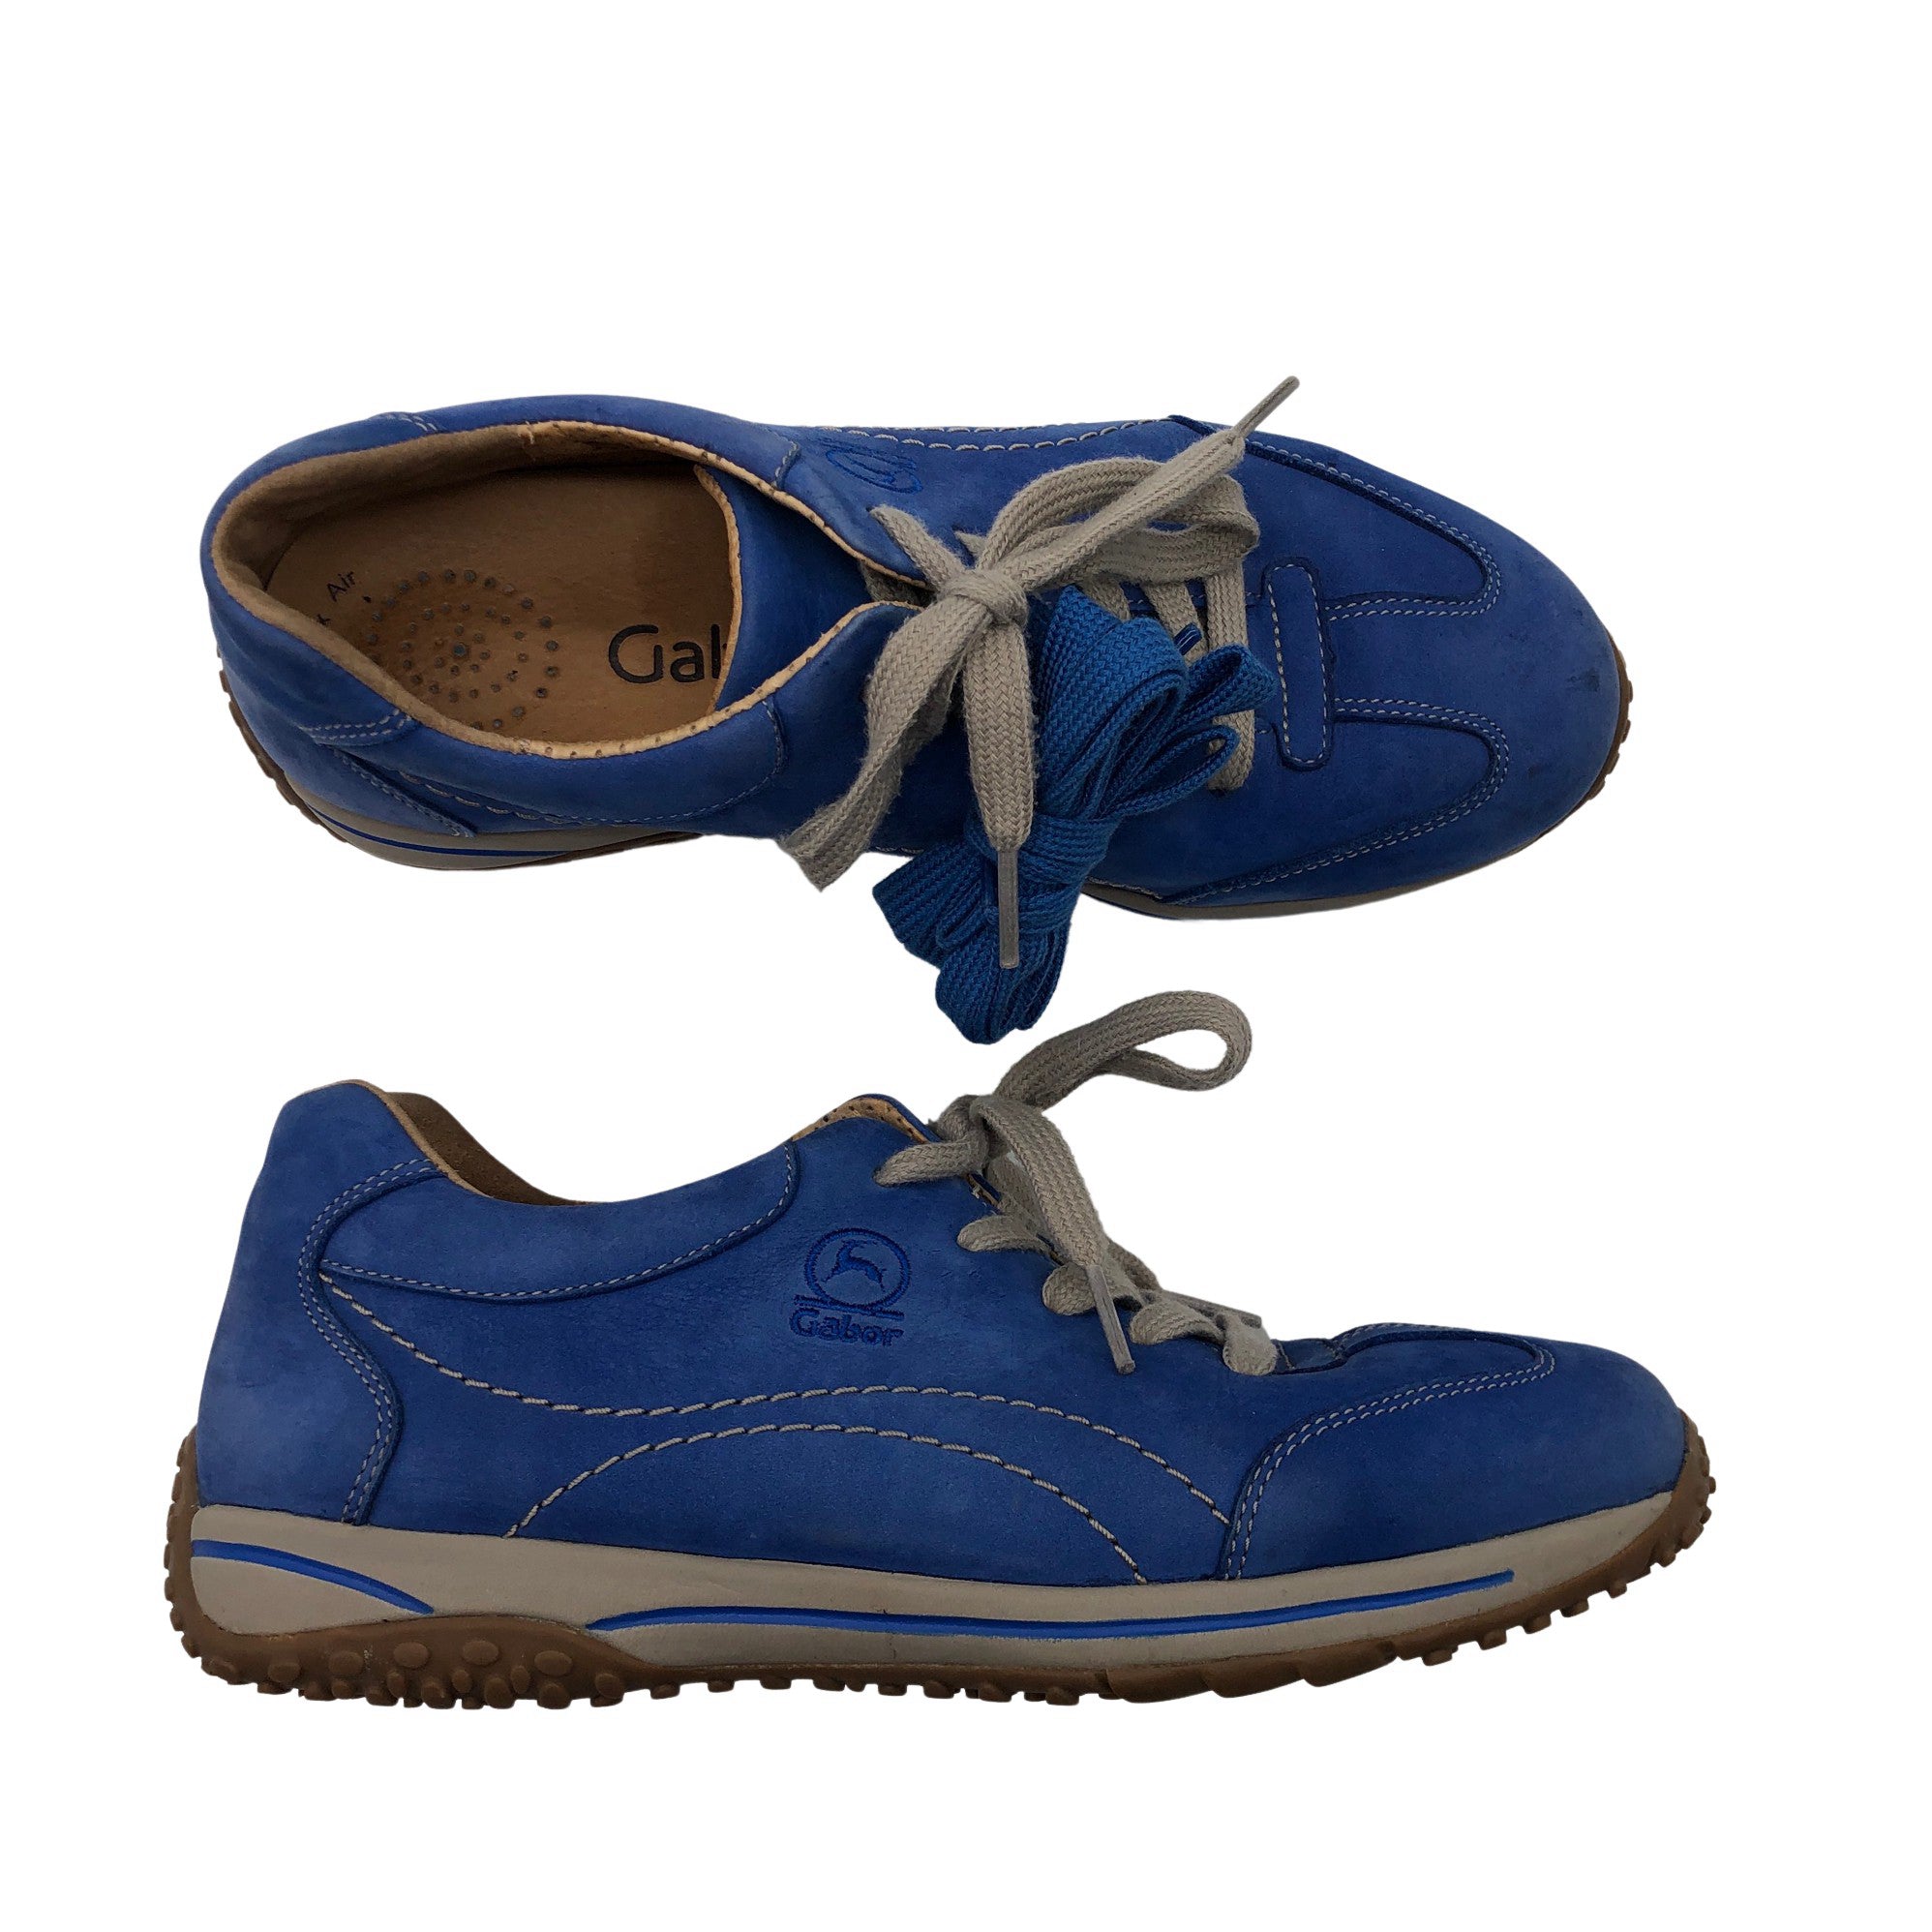 Herske patrice kristen Women's Gabor Sneakers, size 37 (Blue) | Emmy